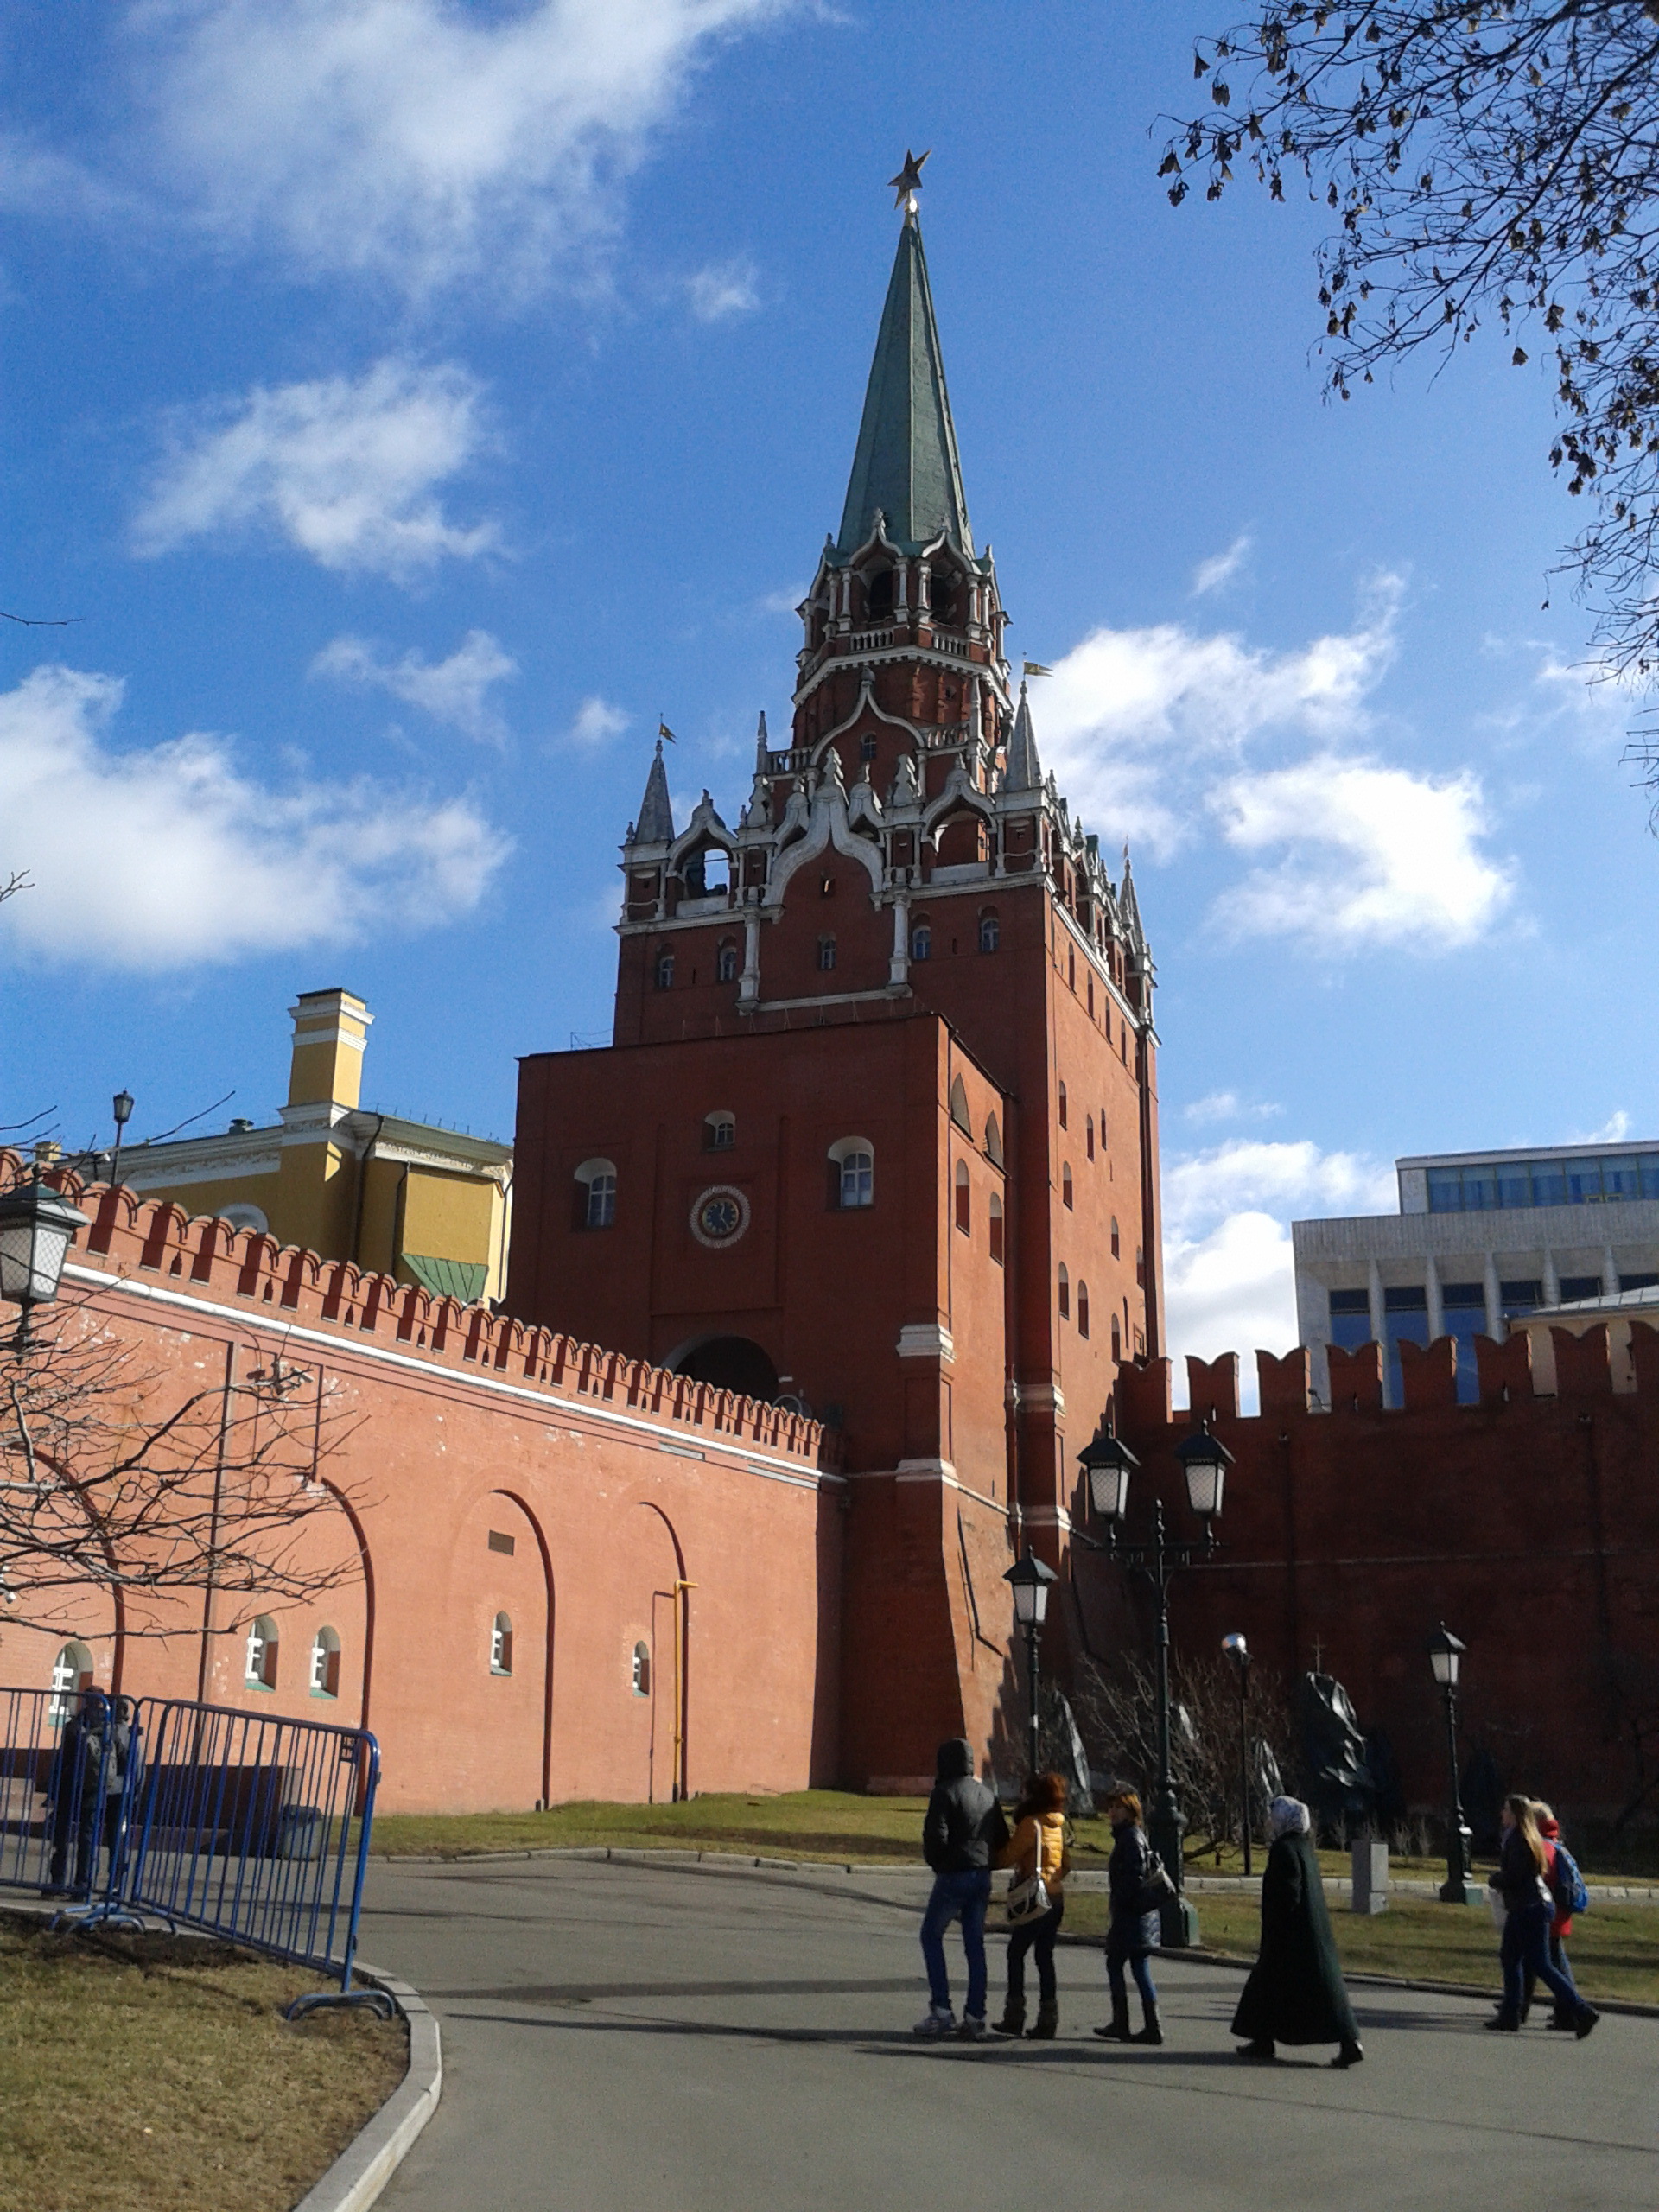 кремль москва троицкая башня